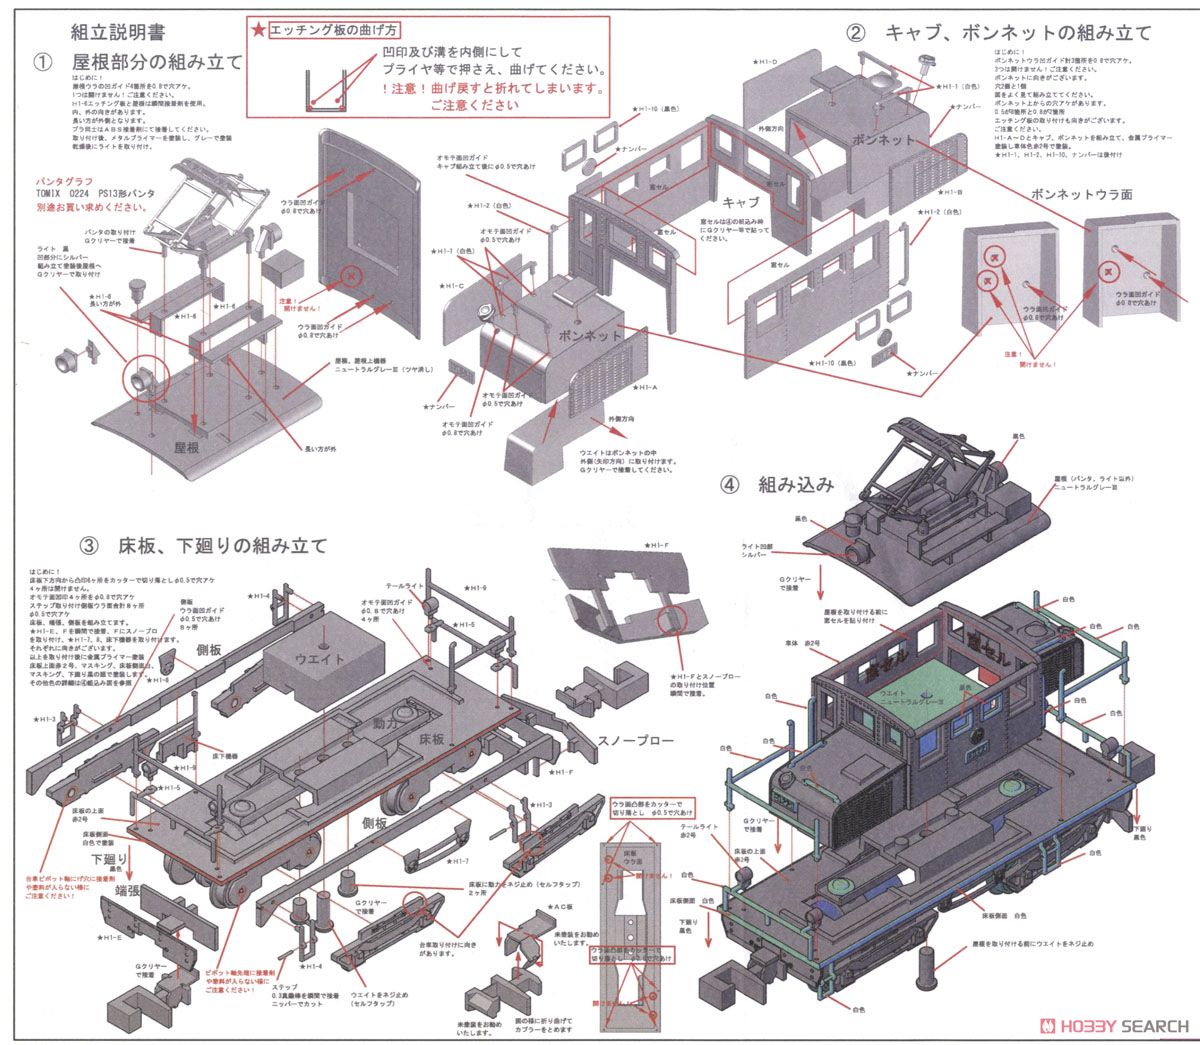 プラシリーズ 弘南鉄道 ED22 1 電気機関車 (組立キット) (鉄道模型) 設計図1